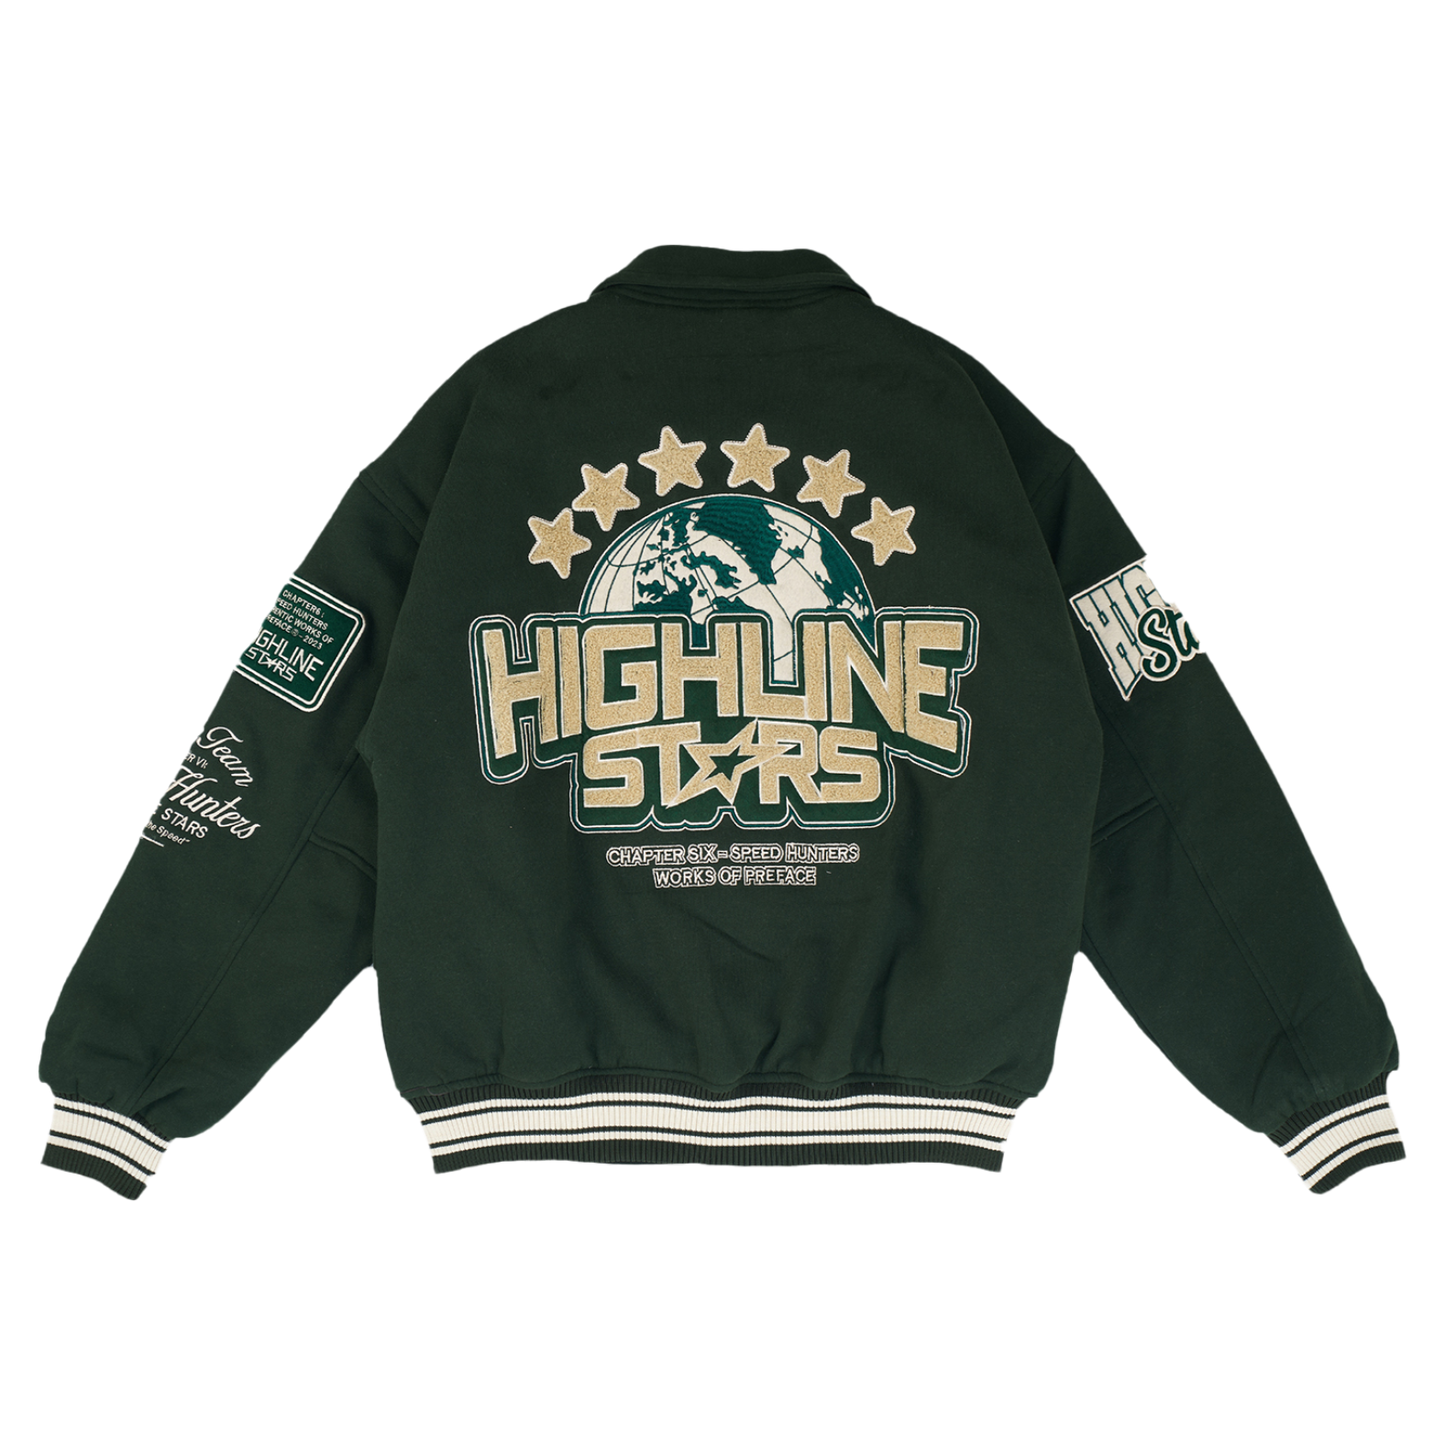 The Highline Stars Varsity Jacket